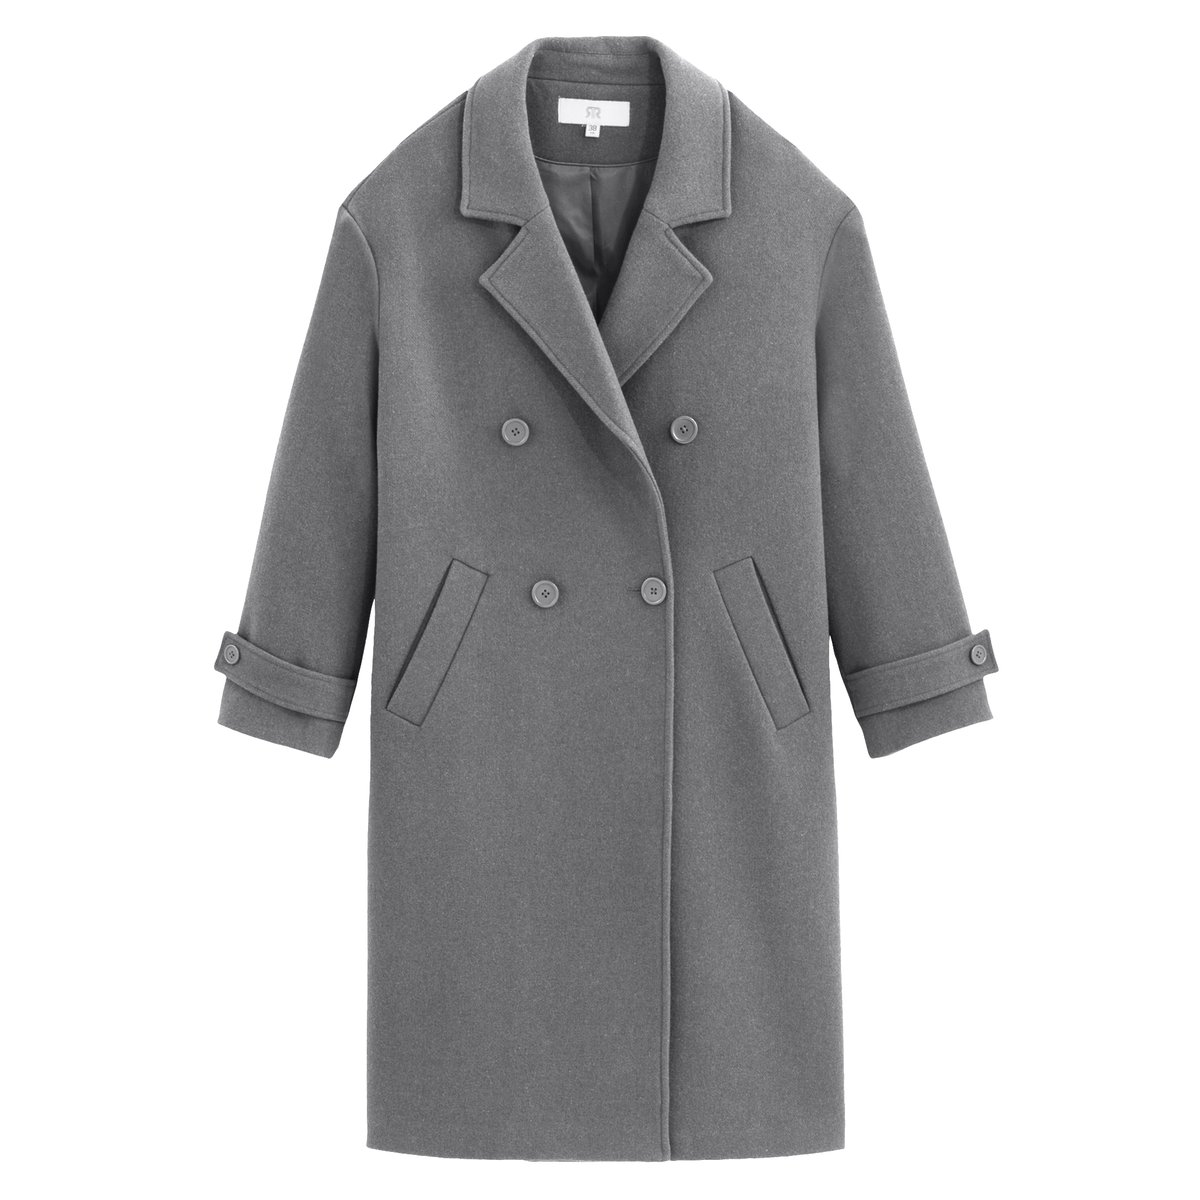 Пальто La Redoute La Redoute 44 (FR) - 50 (RUS) серый, размер 44 (FR) - 50 (RUS) La Redoute 44 (FR) - 50 (RUS) серый - фото 5